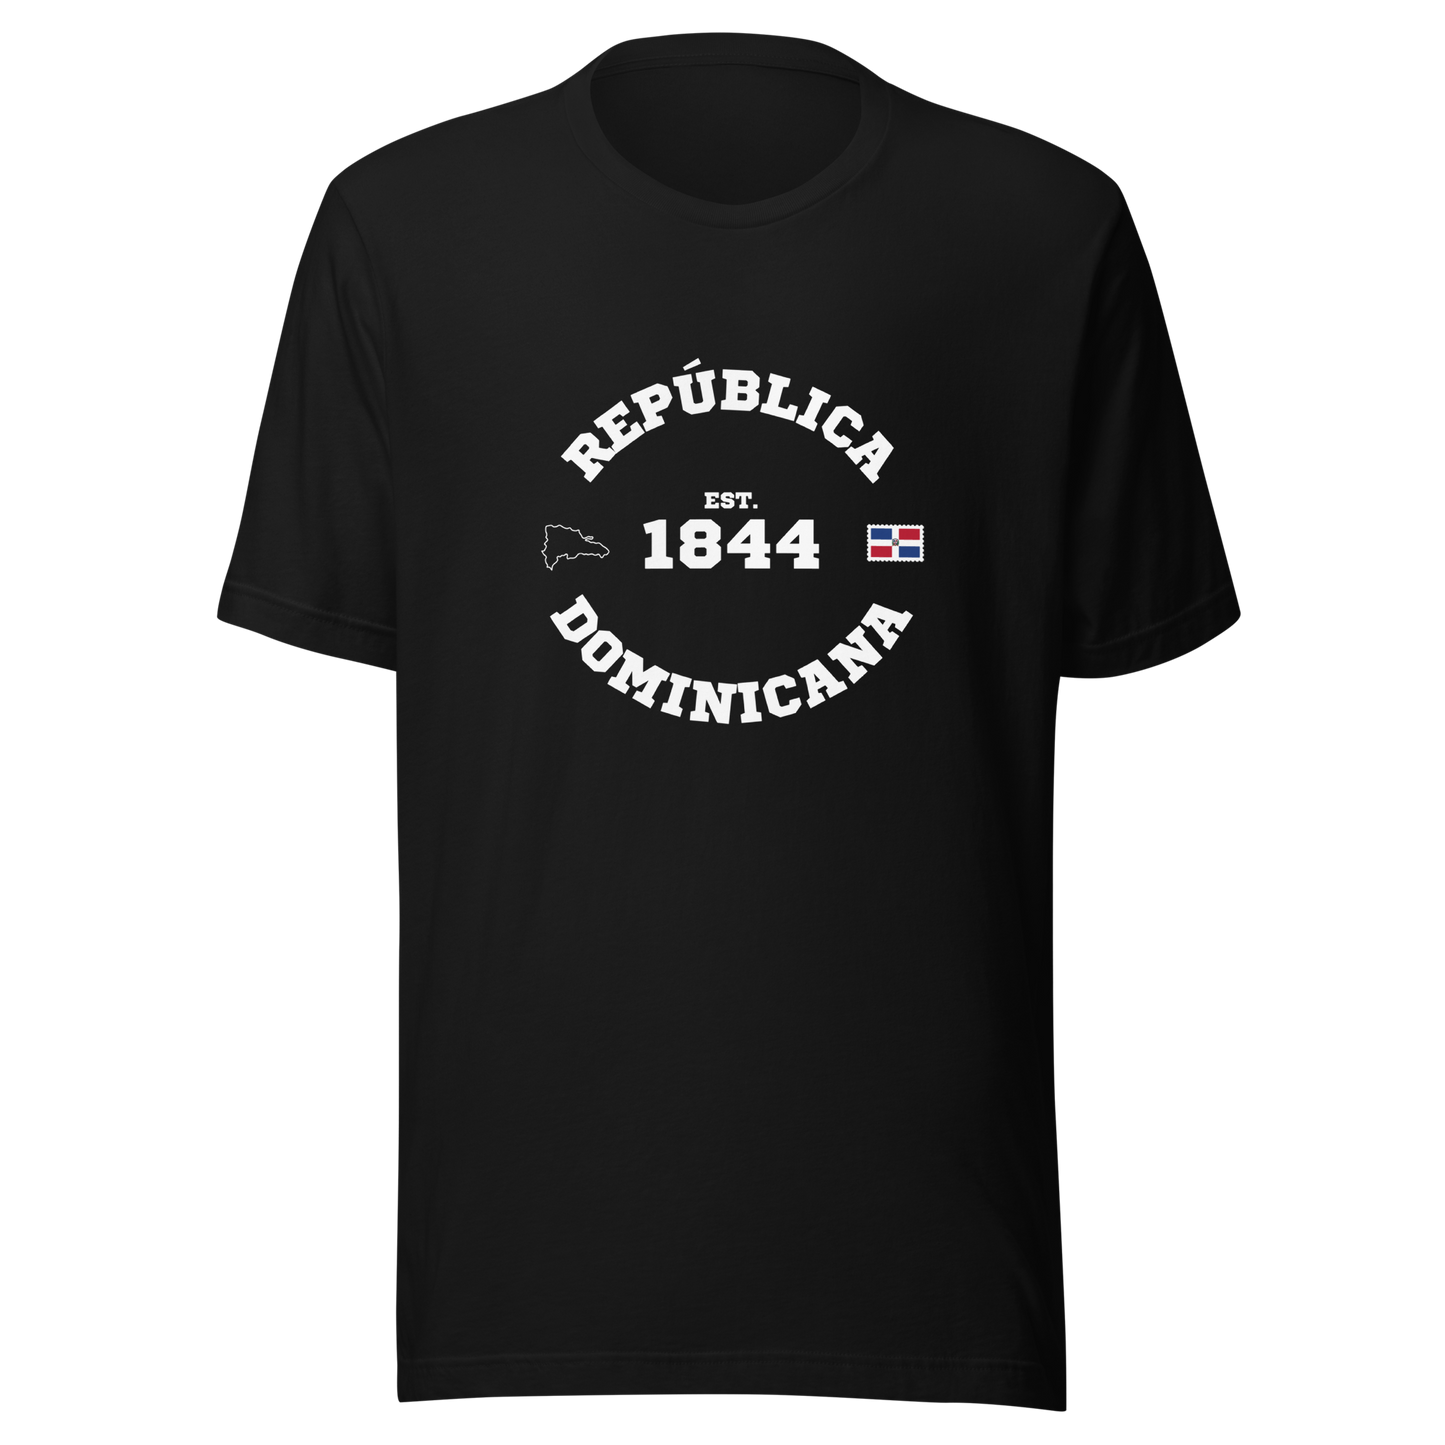 República Dominicana Est. 1844 Unisex Premium T-Shirt